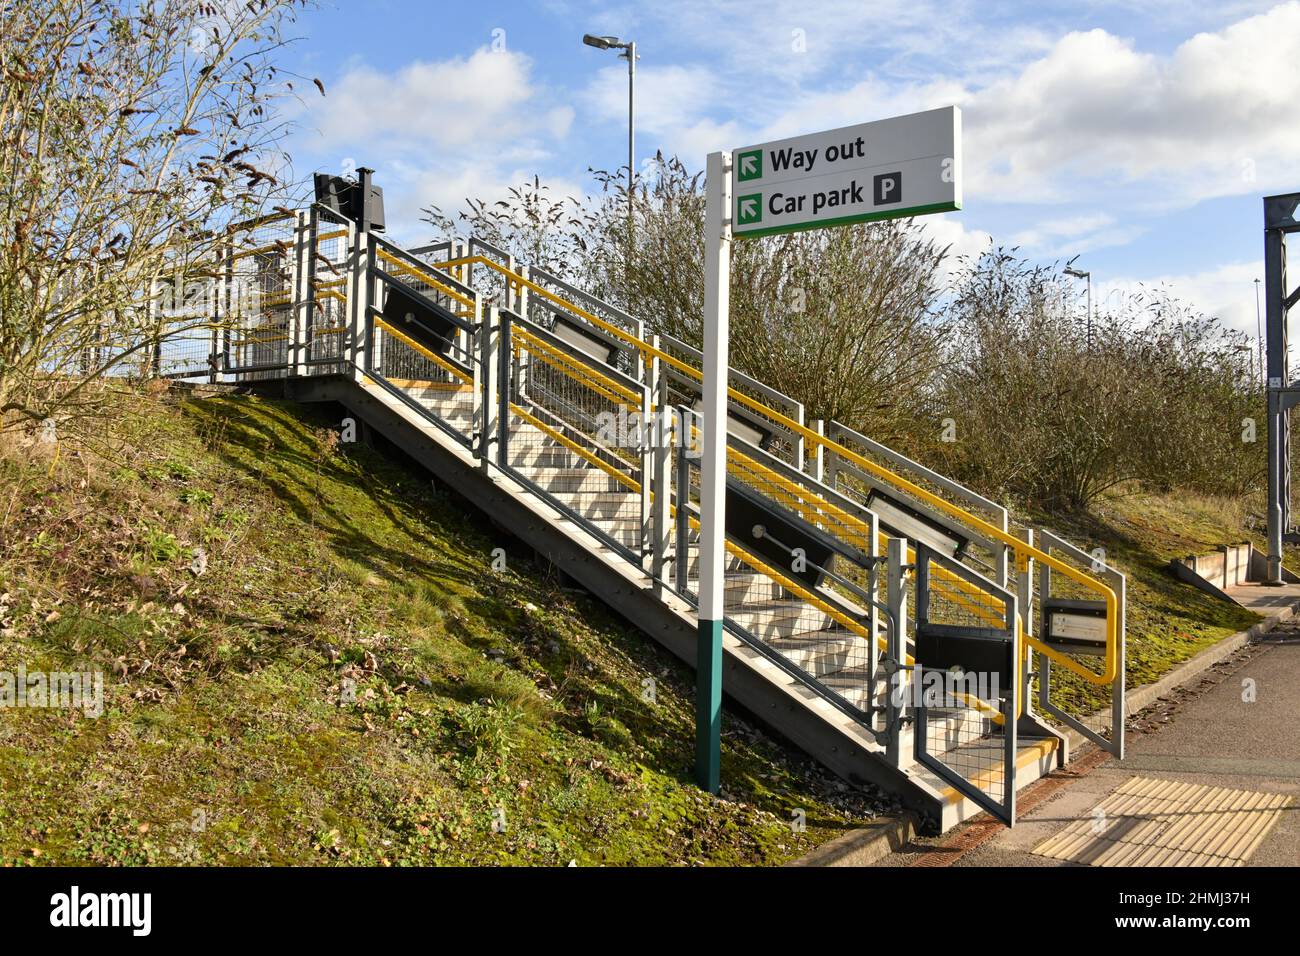 Nouveaux accès au parking à quelques pas de la gare Lichfield Trent Valley plate-forme 2 construite sans accès pour les personnes à mobilité réduite Banque D'Images